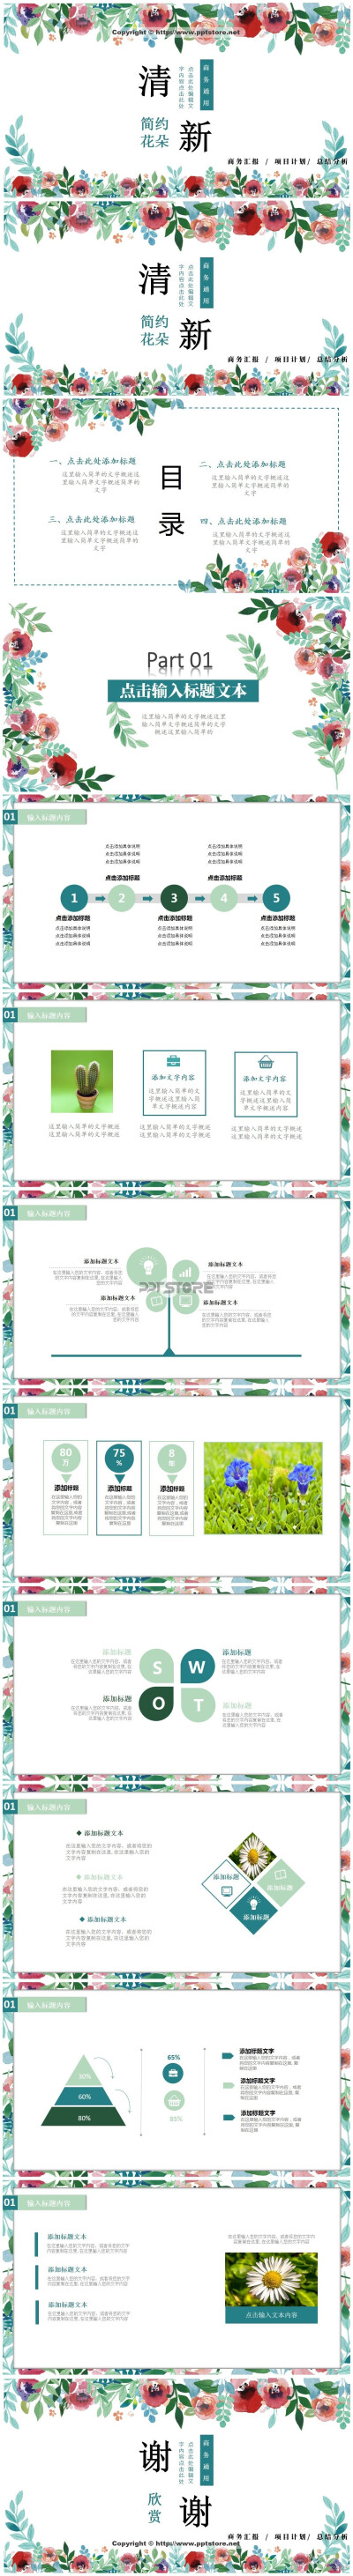 29425-清新简约水彩绘花朵-商务通用模板PPT模板